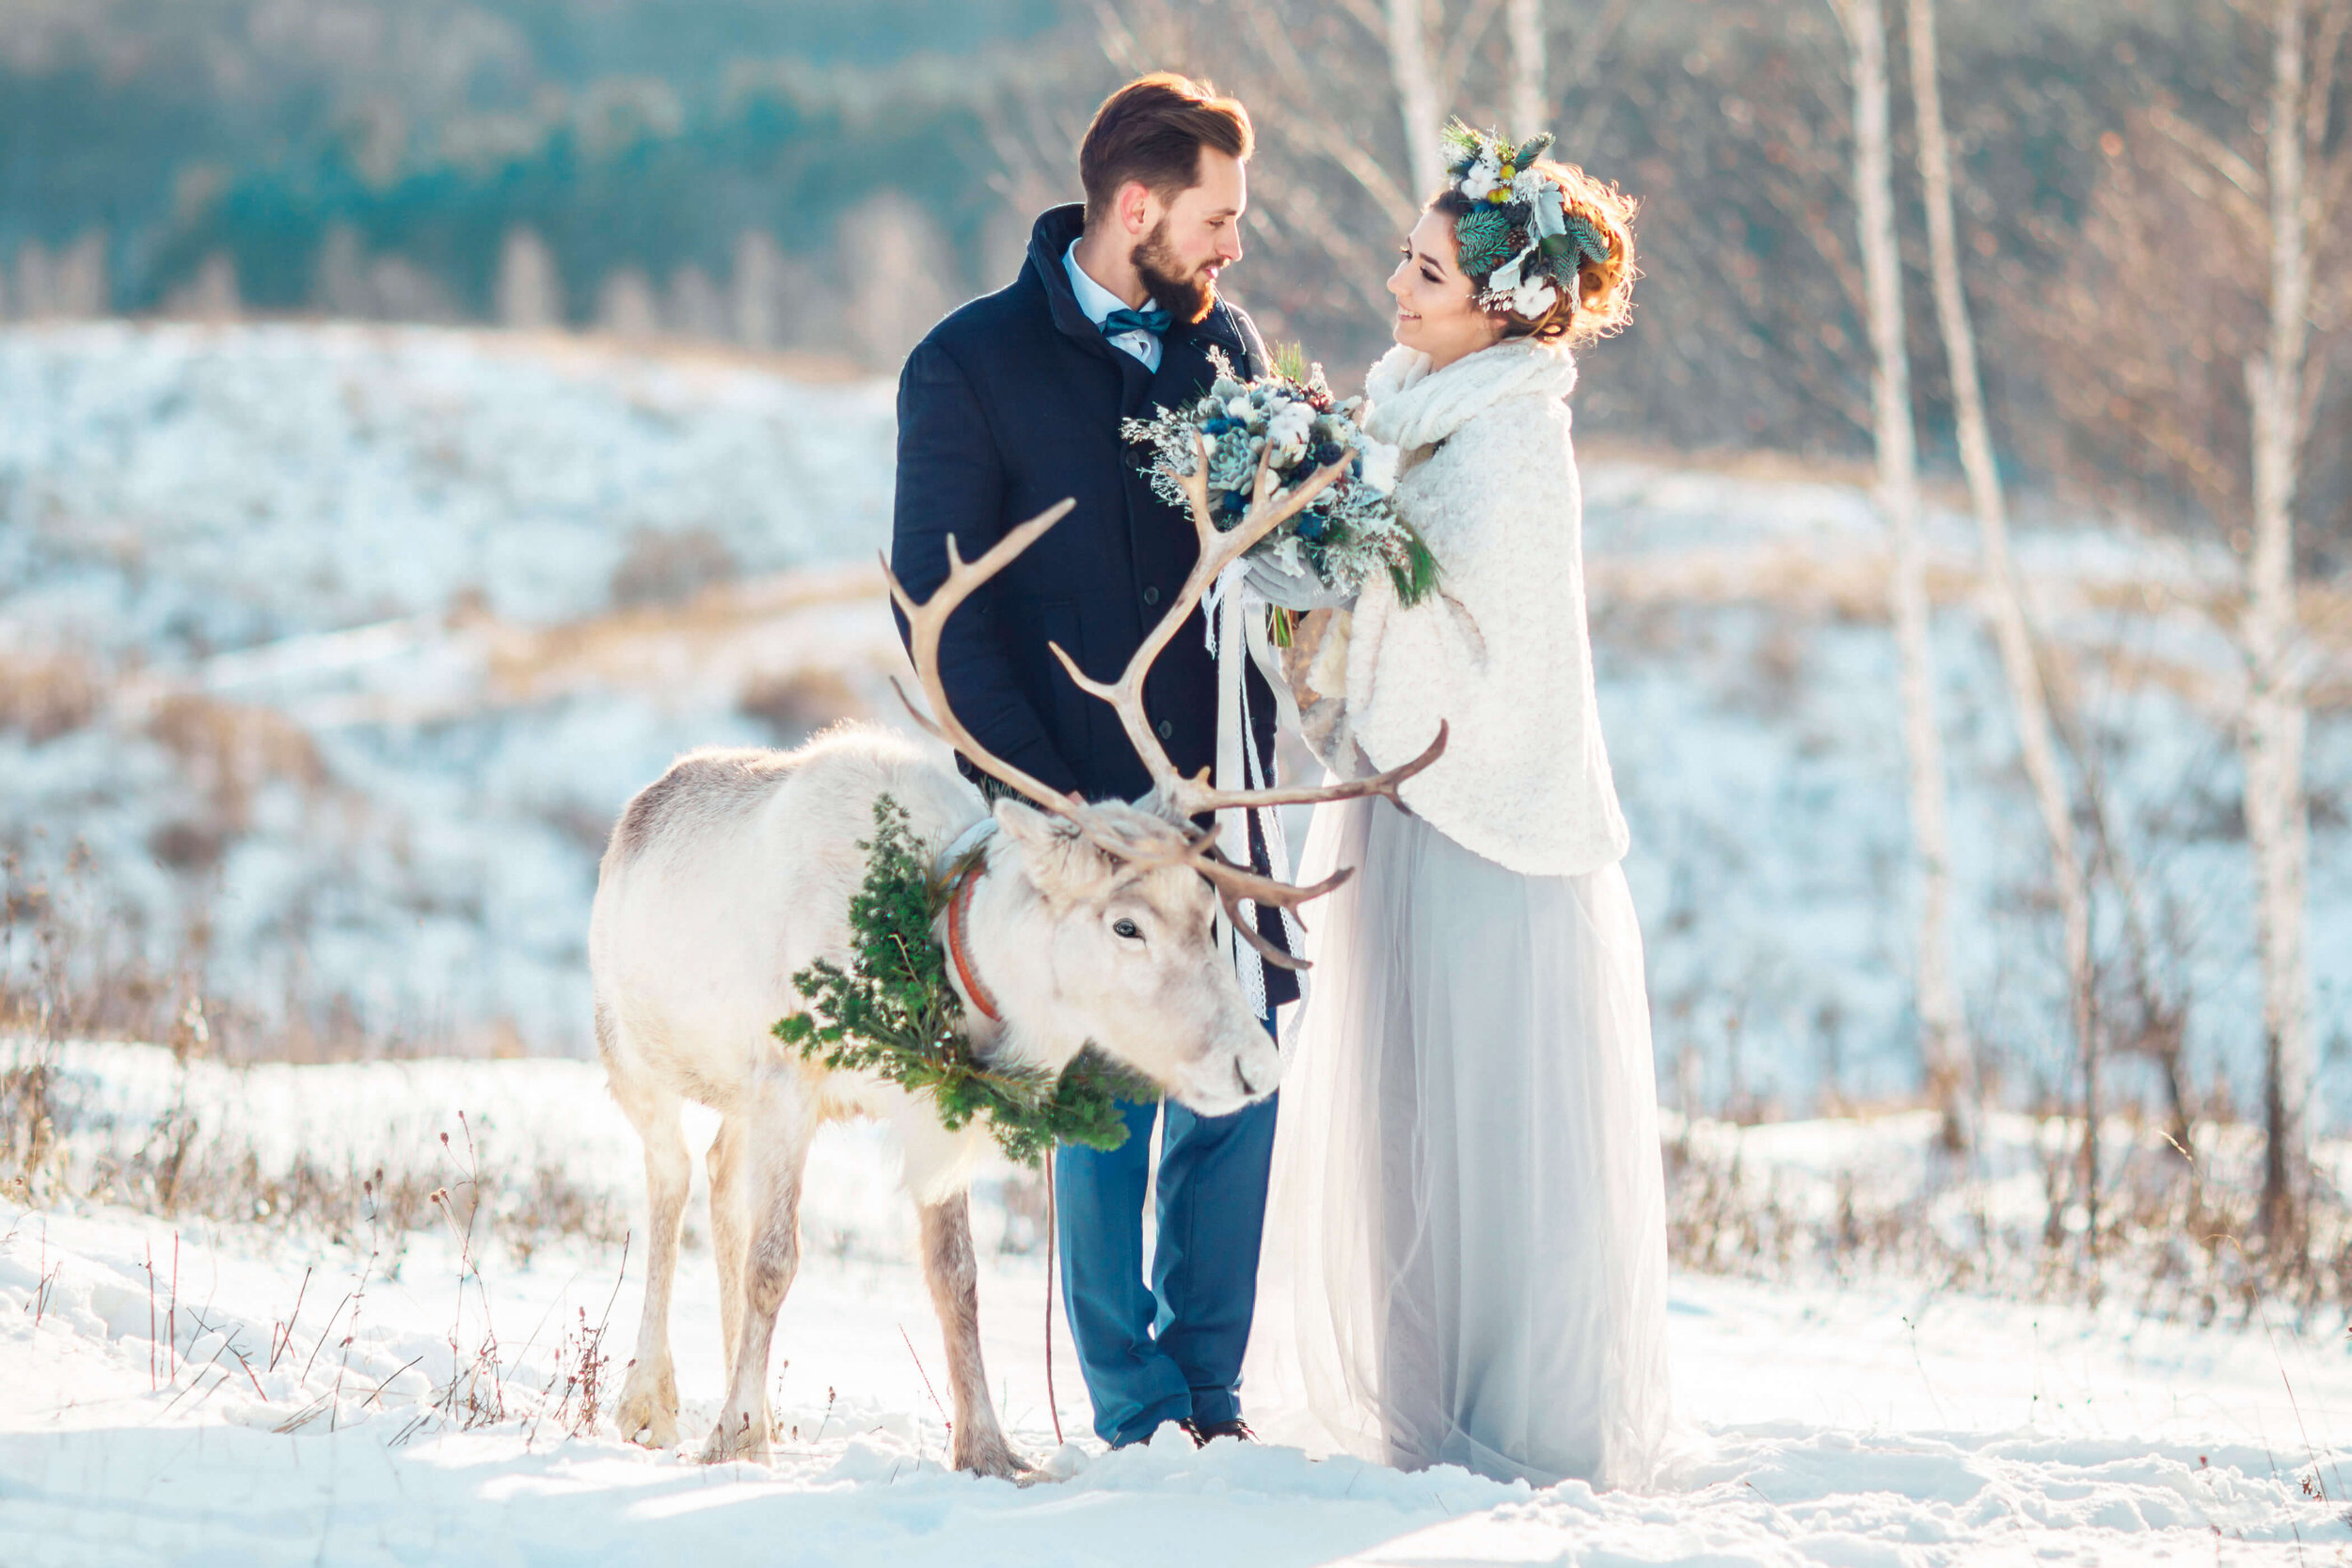 Bride and groom smiling in snowy field with elk.jpg